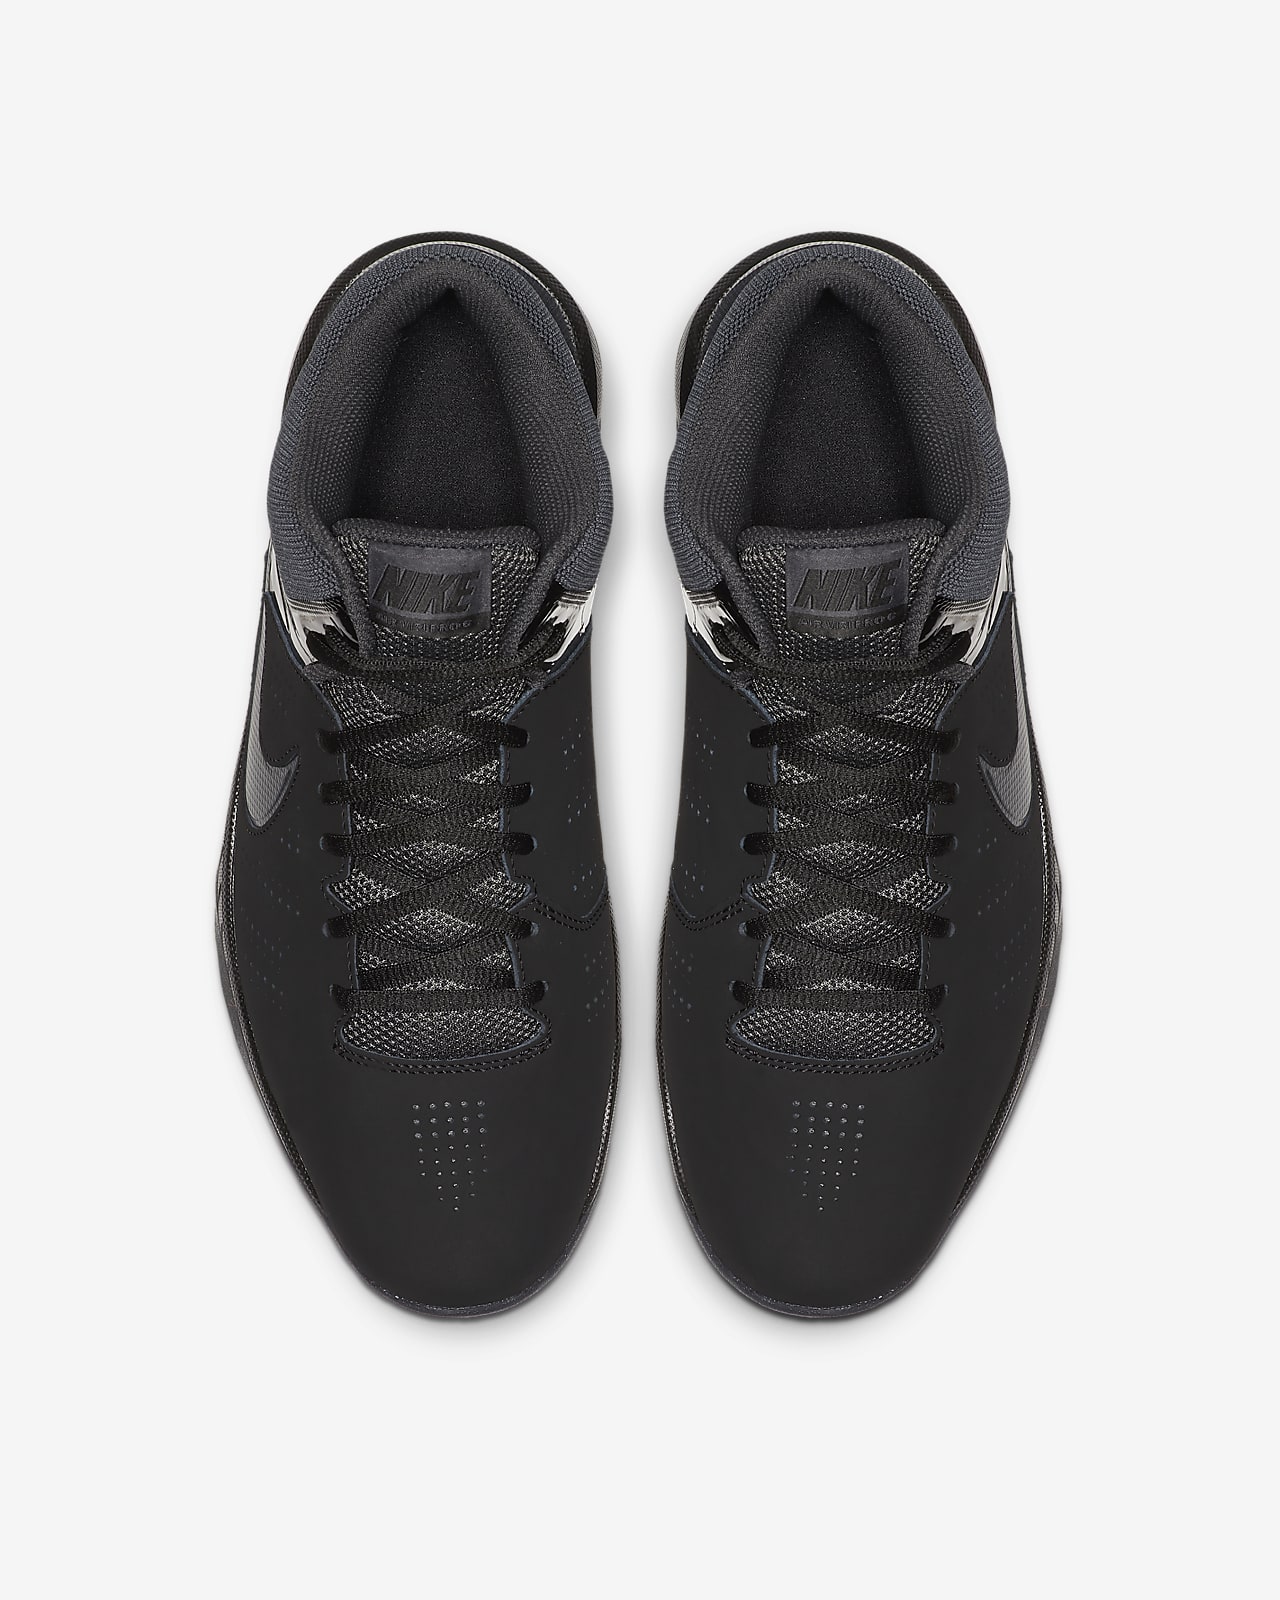 Nike Air Visi Pro Vi Nubuck Men'S Basketball Shoes. Nike.Com